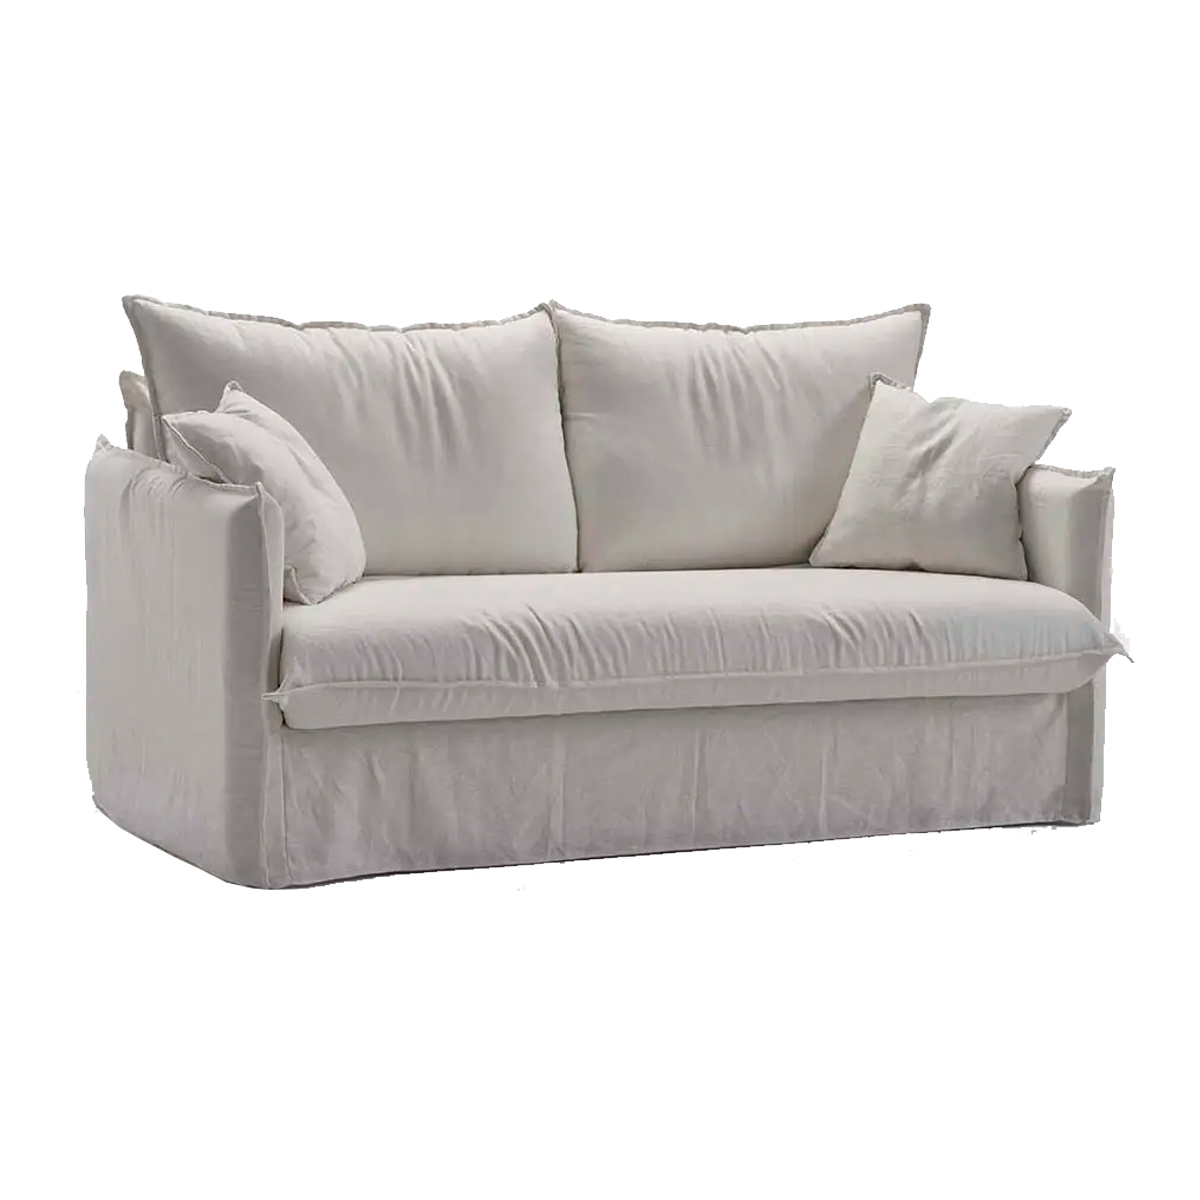 sofa-cama-luxe